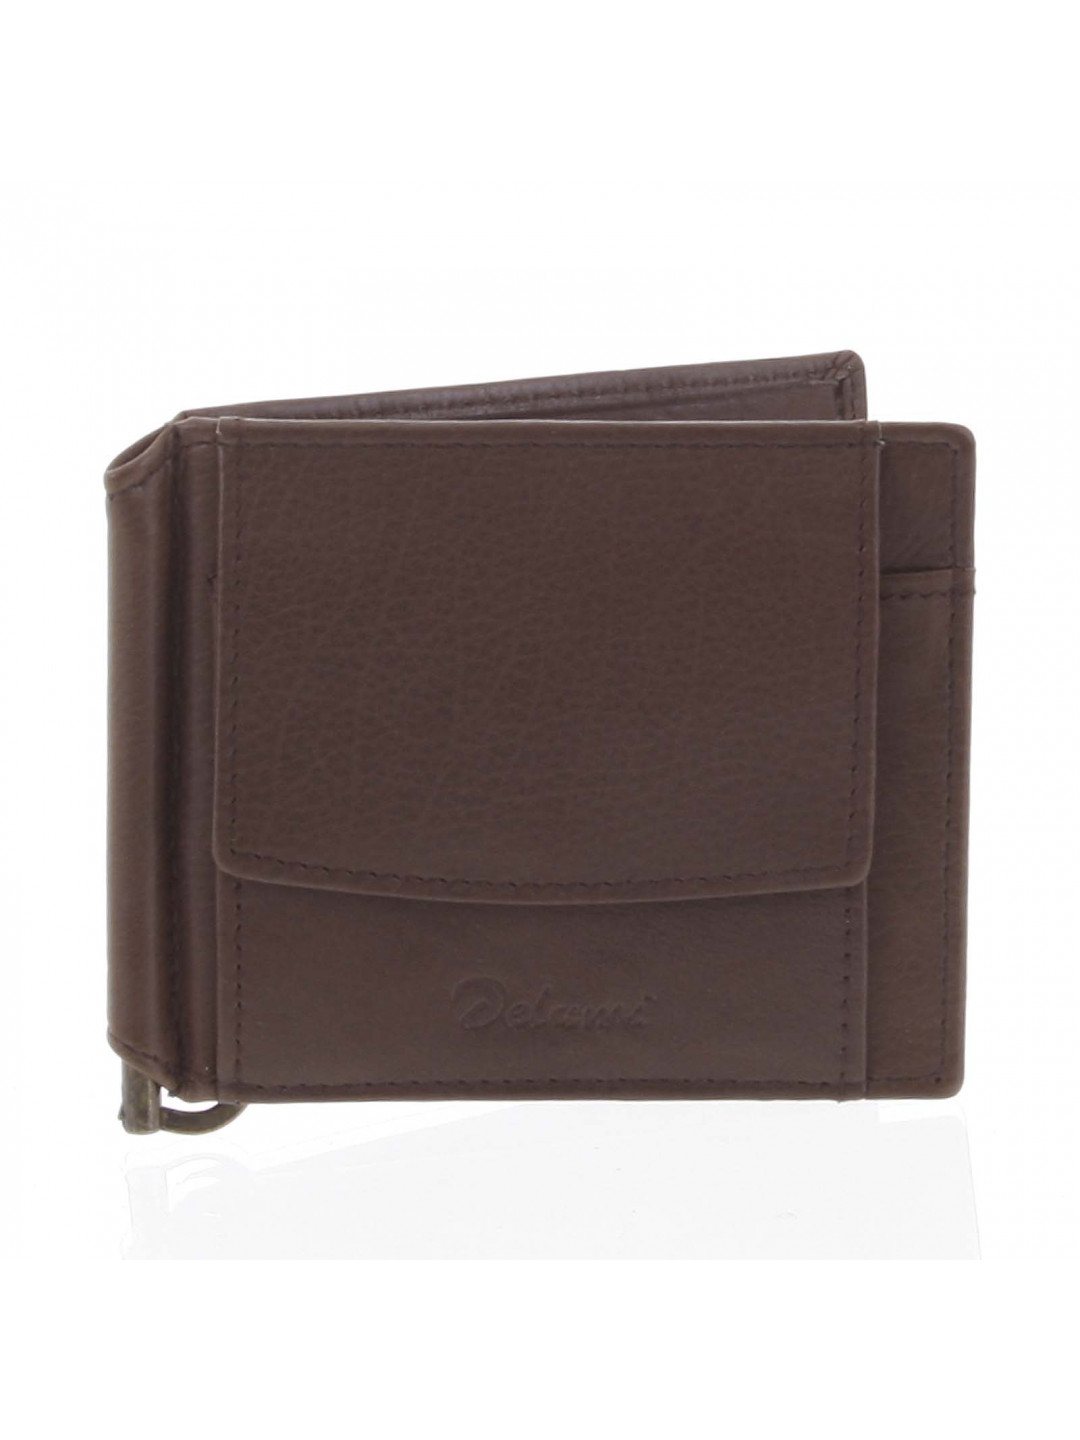 Malá kožená hnědá peněženka – Delami 8697